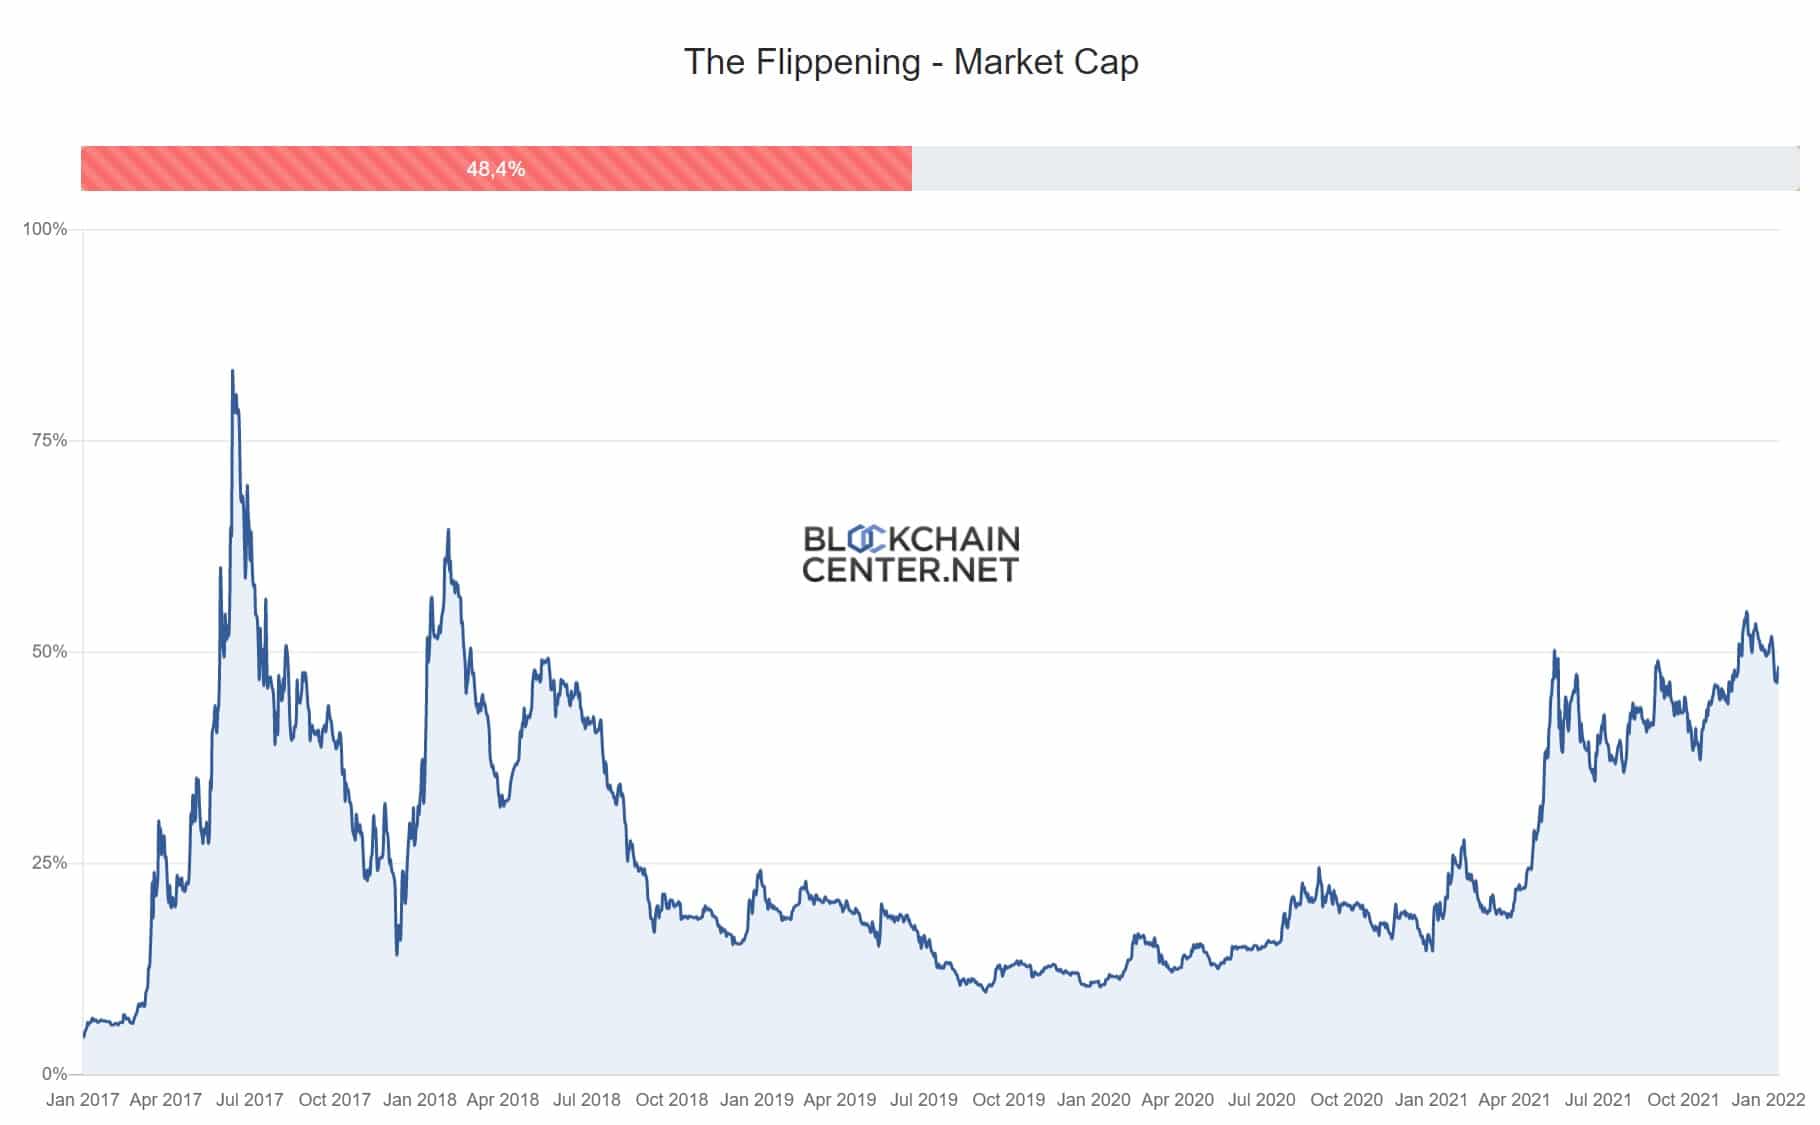 A Flippening Market Cap